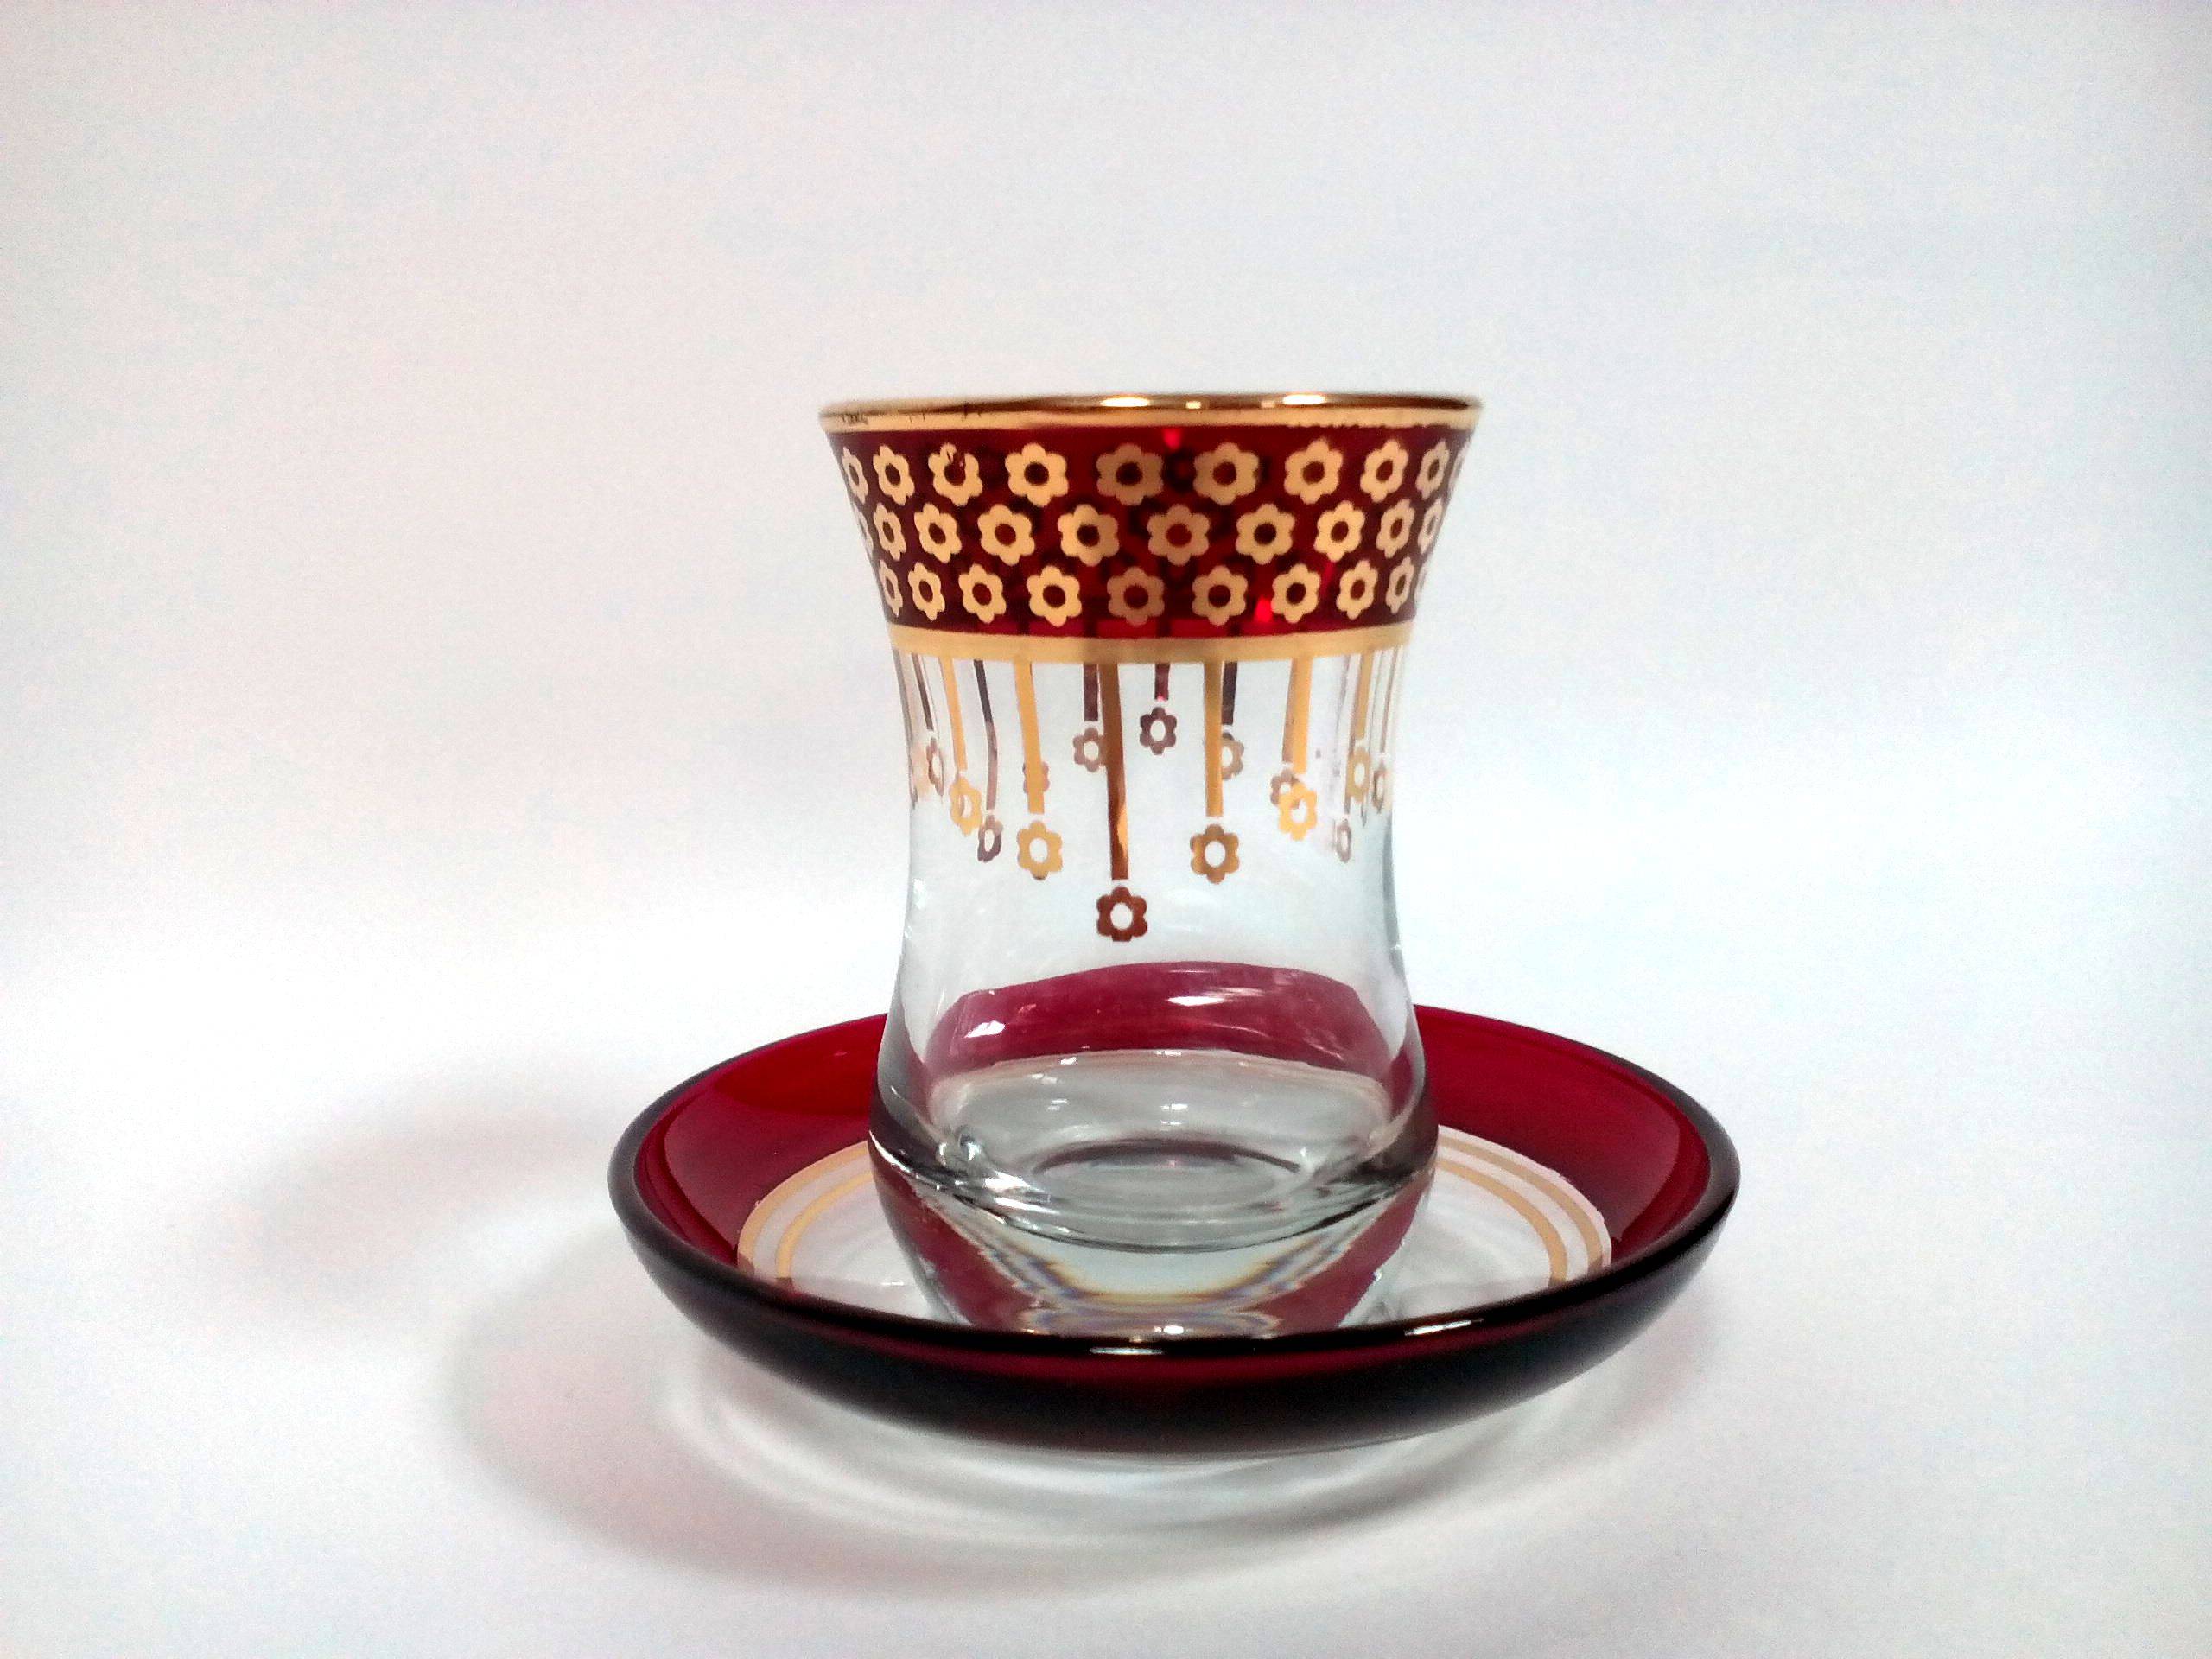 Турецкая чашка для чая: как называется, особенности формы и объема, разнообразие стаканов